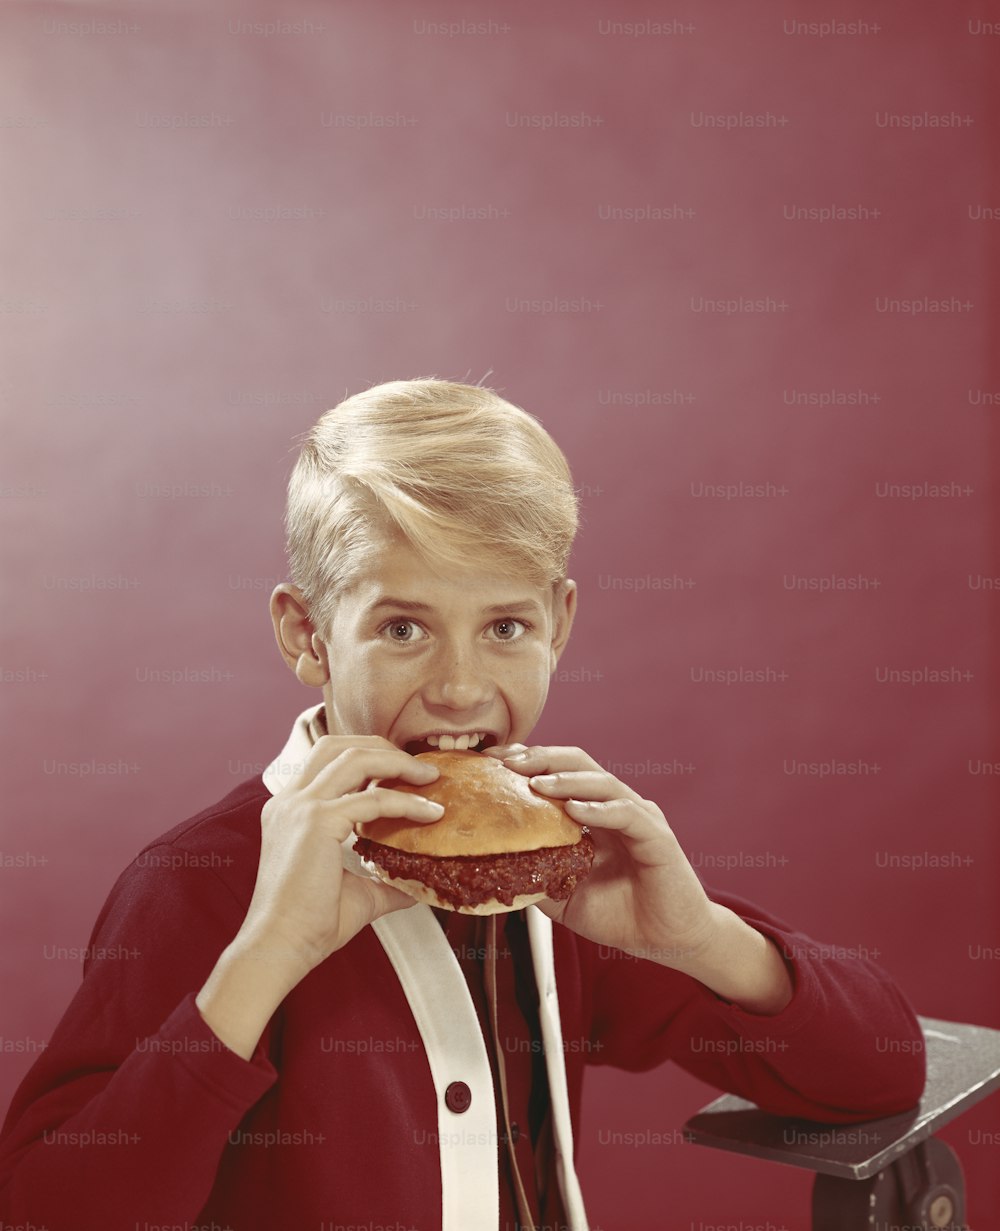 Una mujer con una chaqueta roja está comiendo una hamburguesa